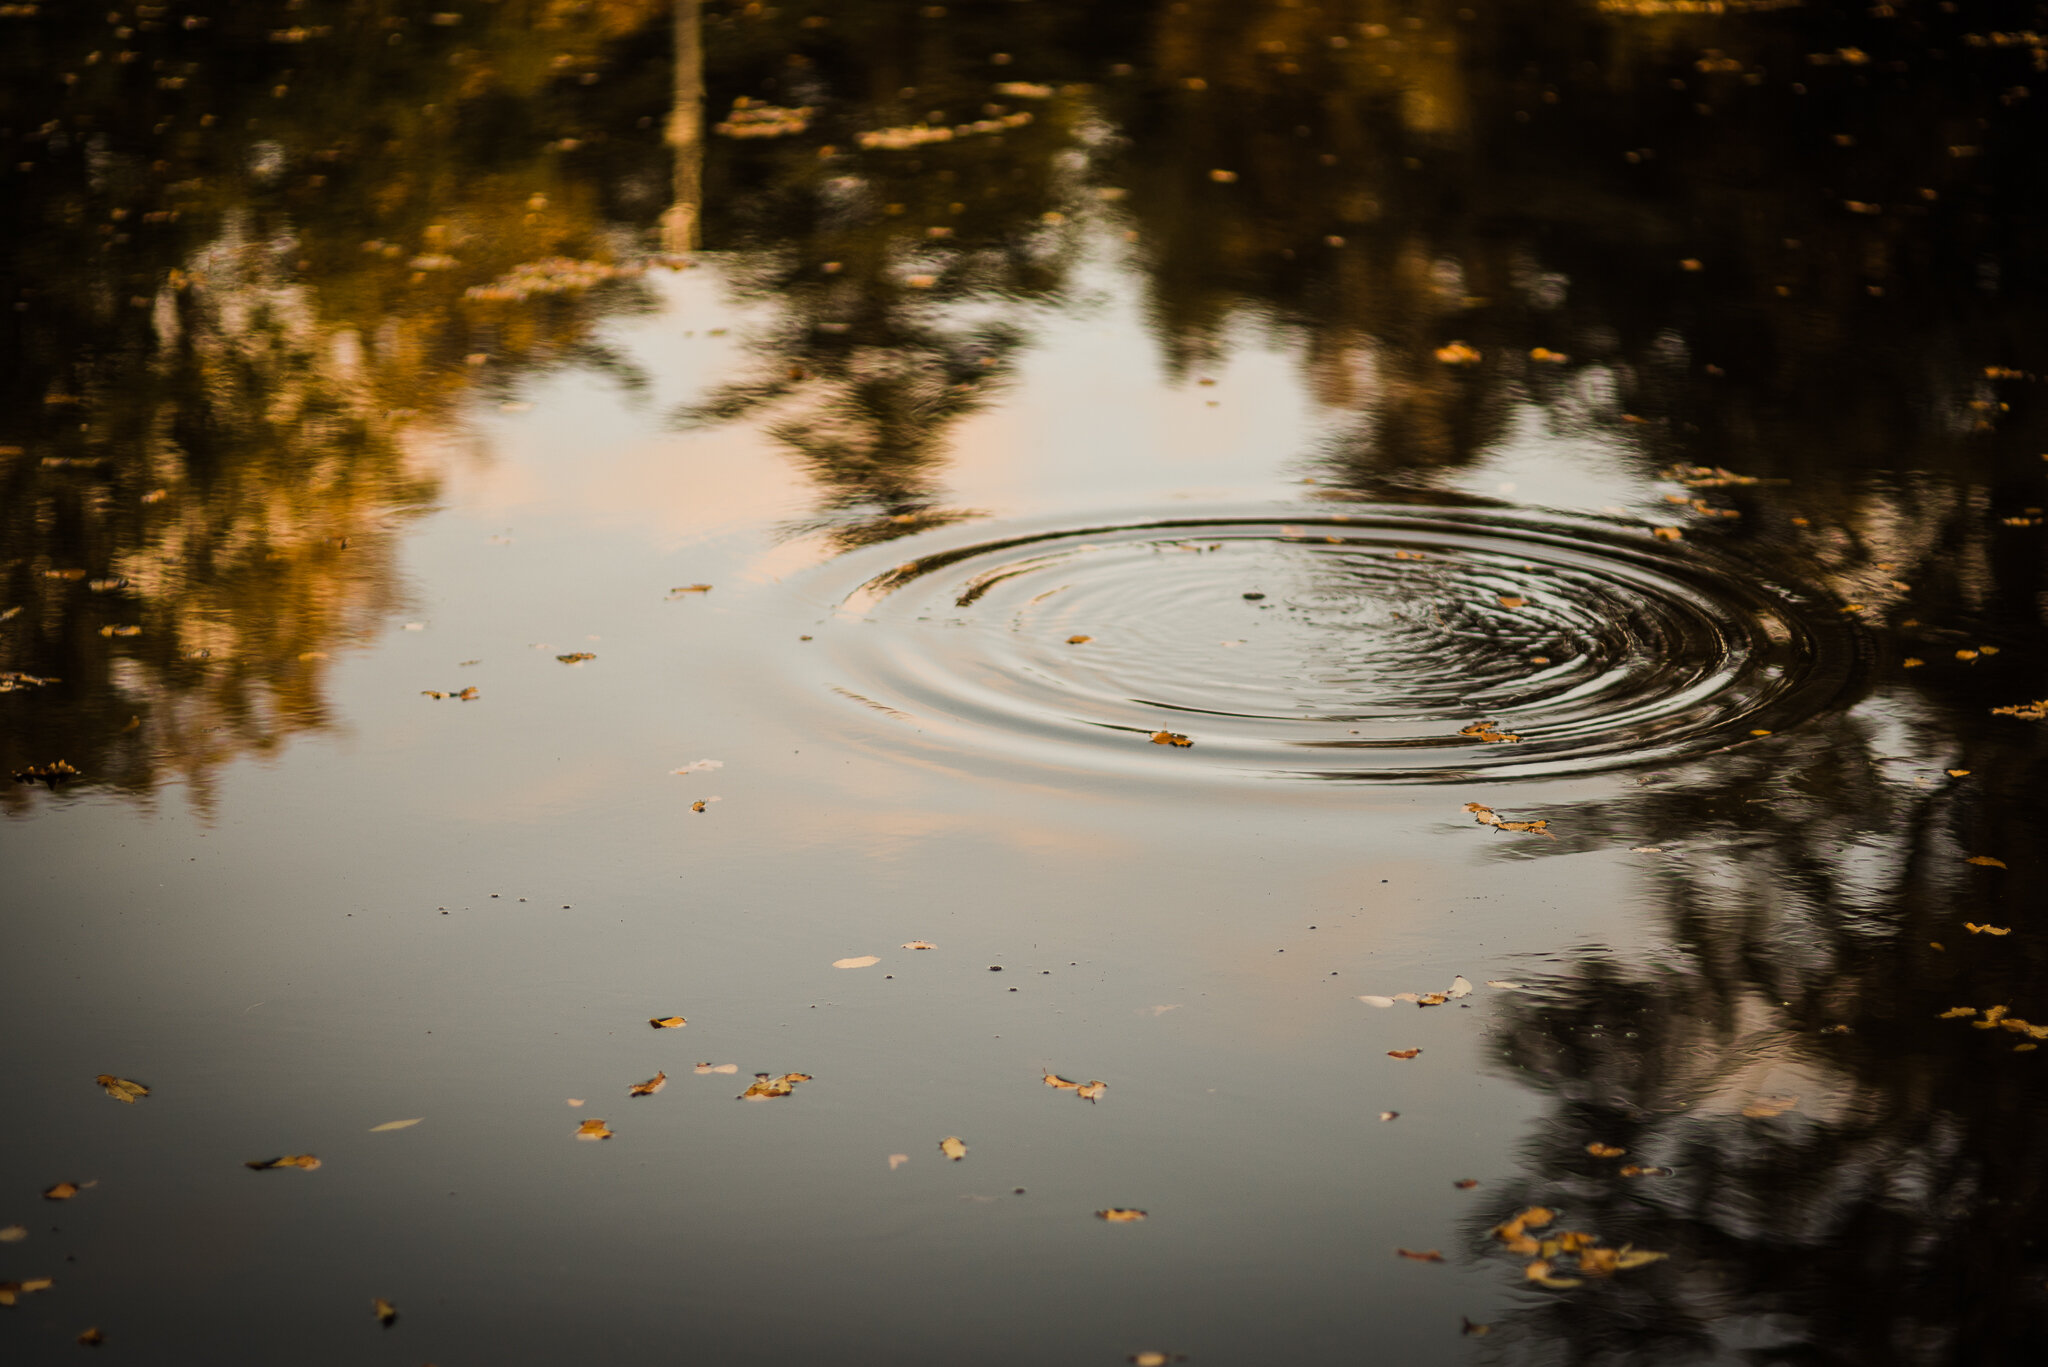 Pond-Autumn-Photographer-Chui-Photography-4142.jpg